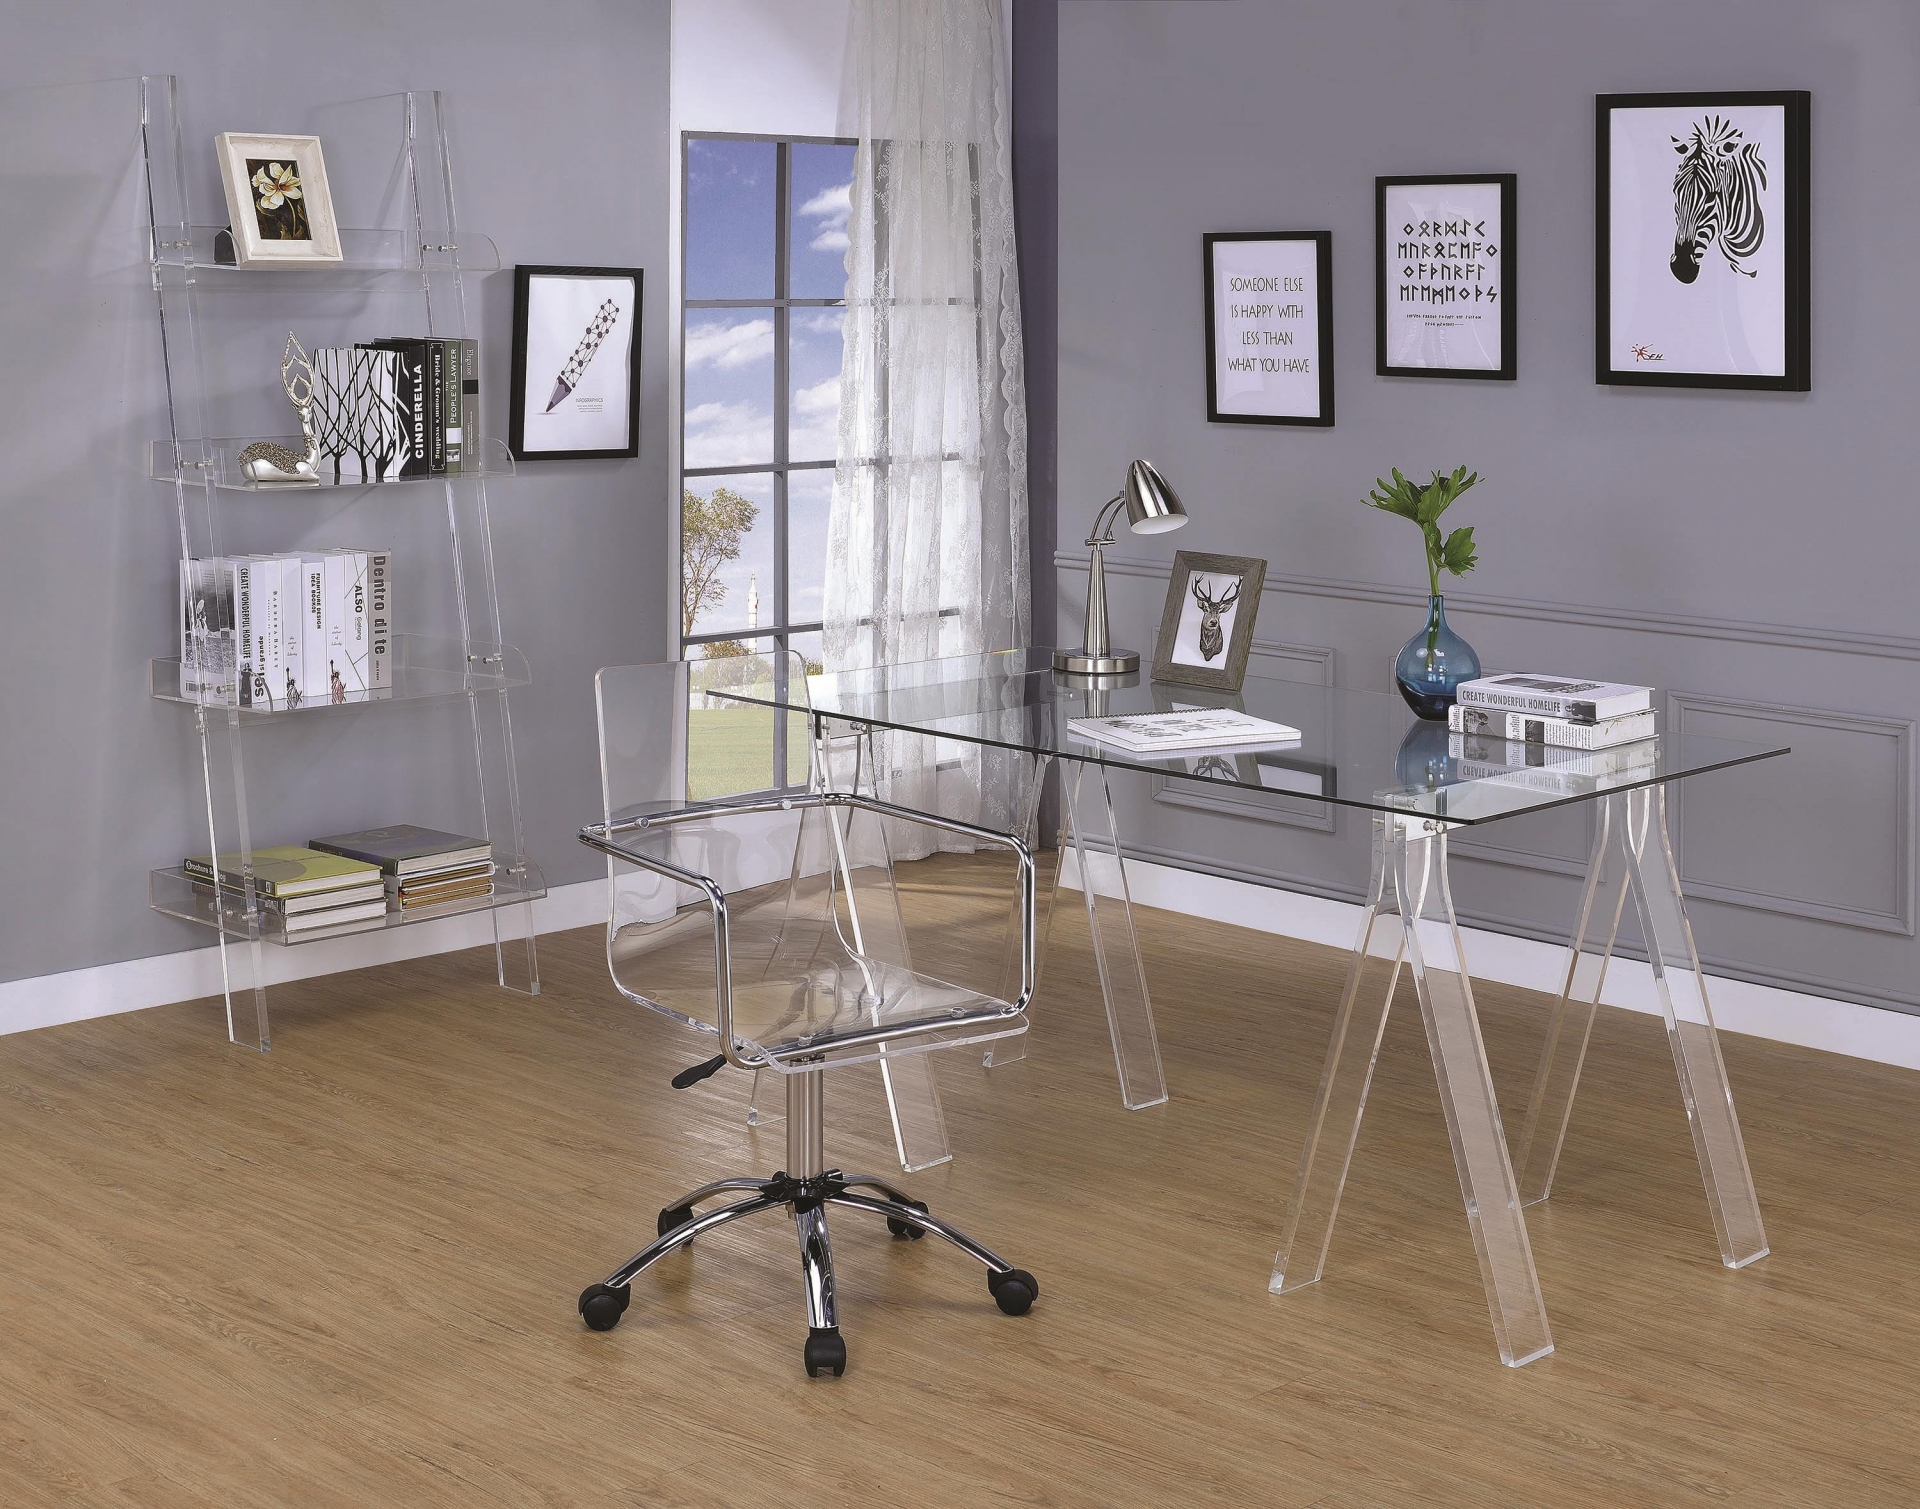 Ý tưởng phác họa 3D cho góc làm việc tại gia của những tín đồ mê nội thất acrylic. Từ bàn làm việc, ghế chân xoay cho đến kệ hình thang nhiều tầng đều trong suốt. Nếu ứng dụng vào thực tế chắc chắn sẽ khiến căn phòng nhỏ trở nên thoáng đãng hơn về thị giác.